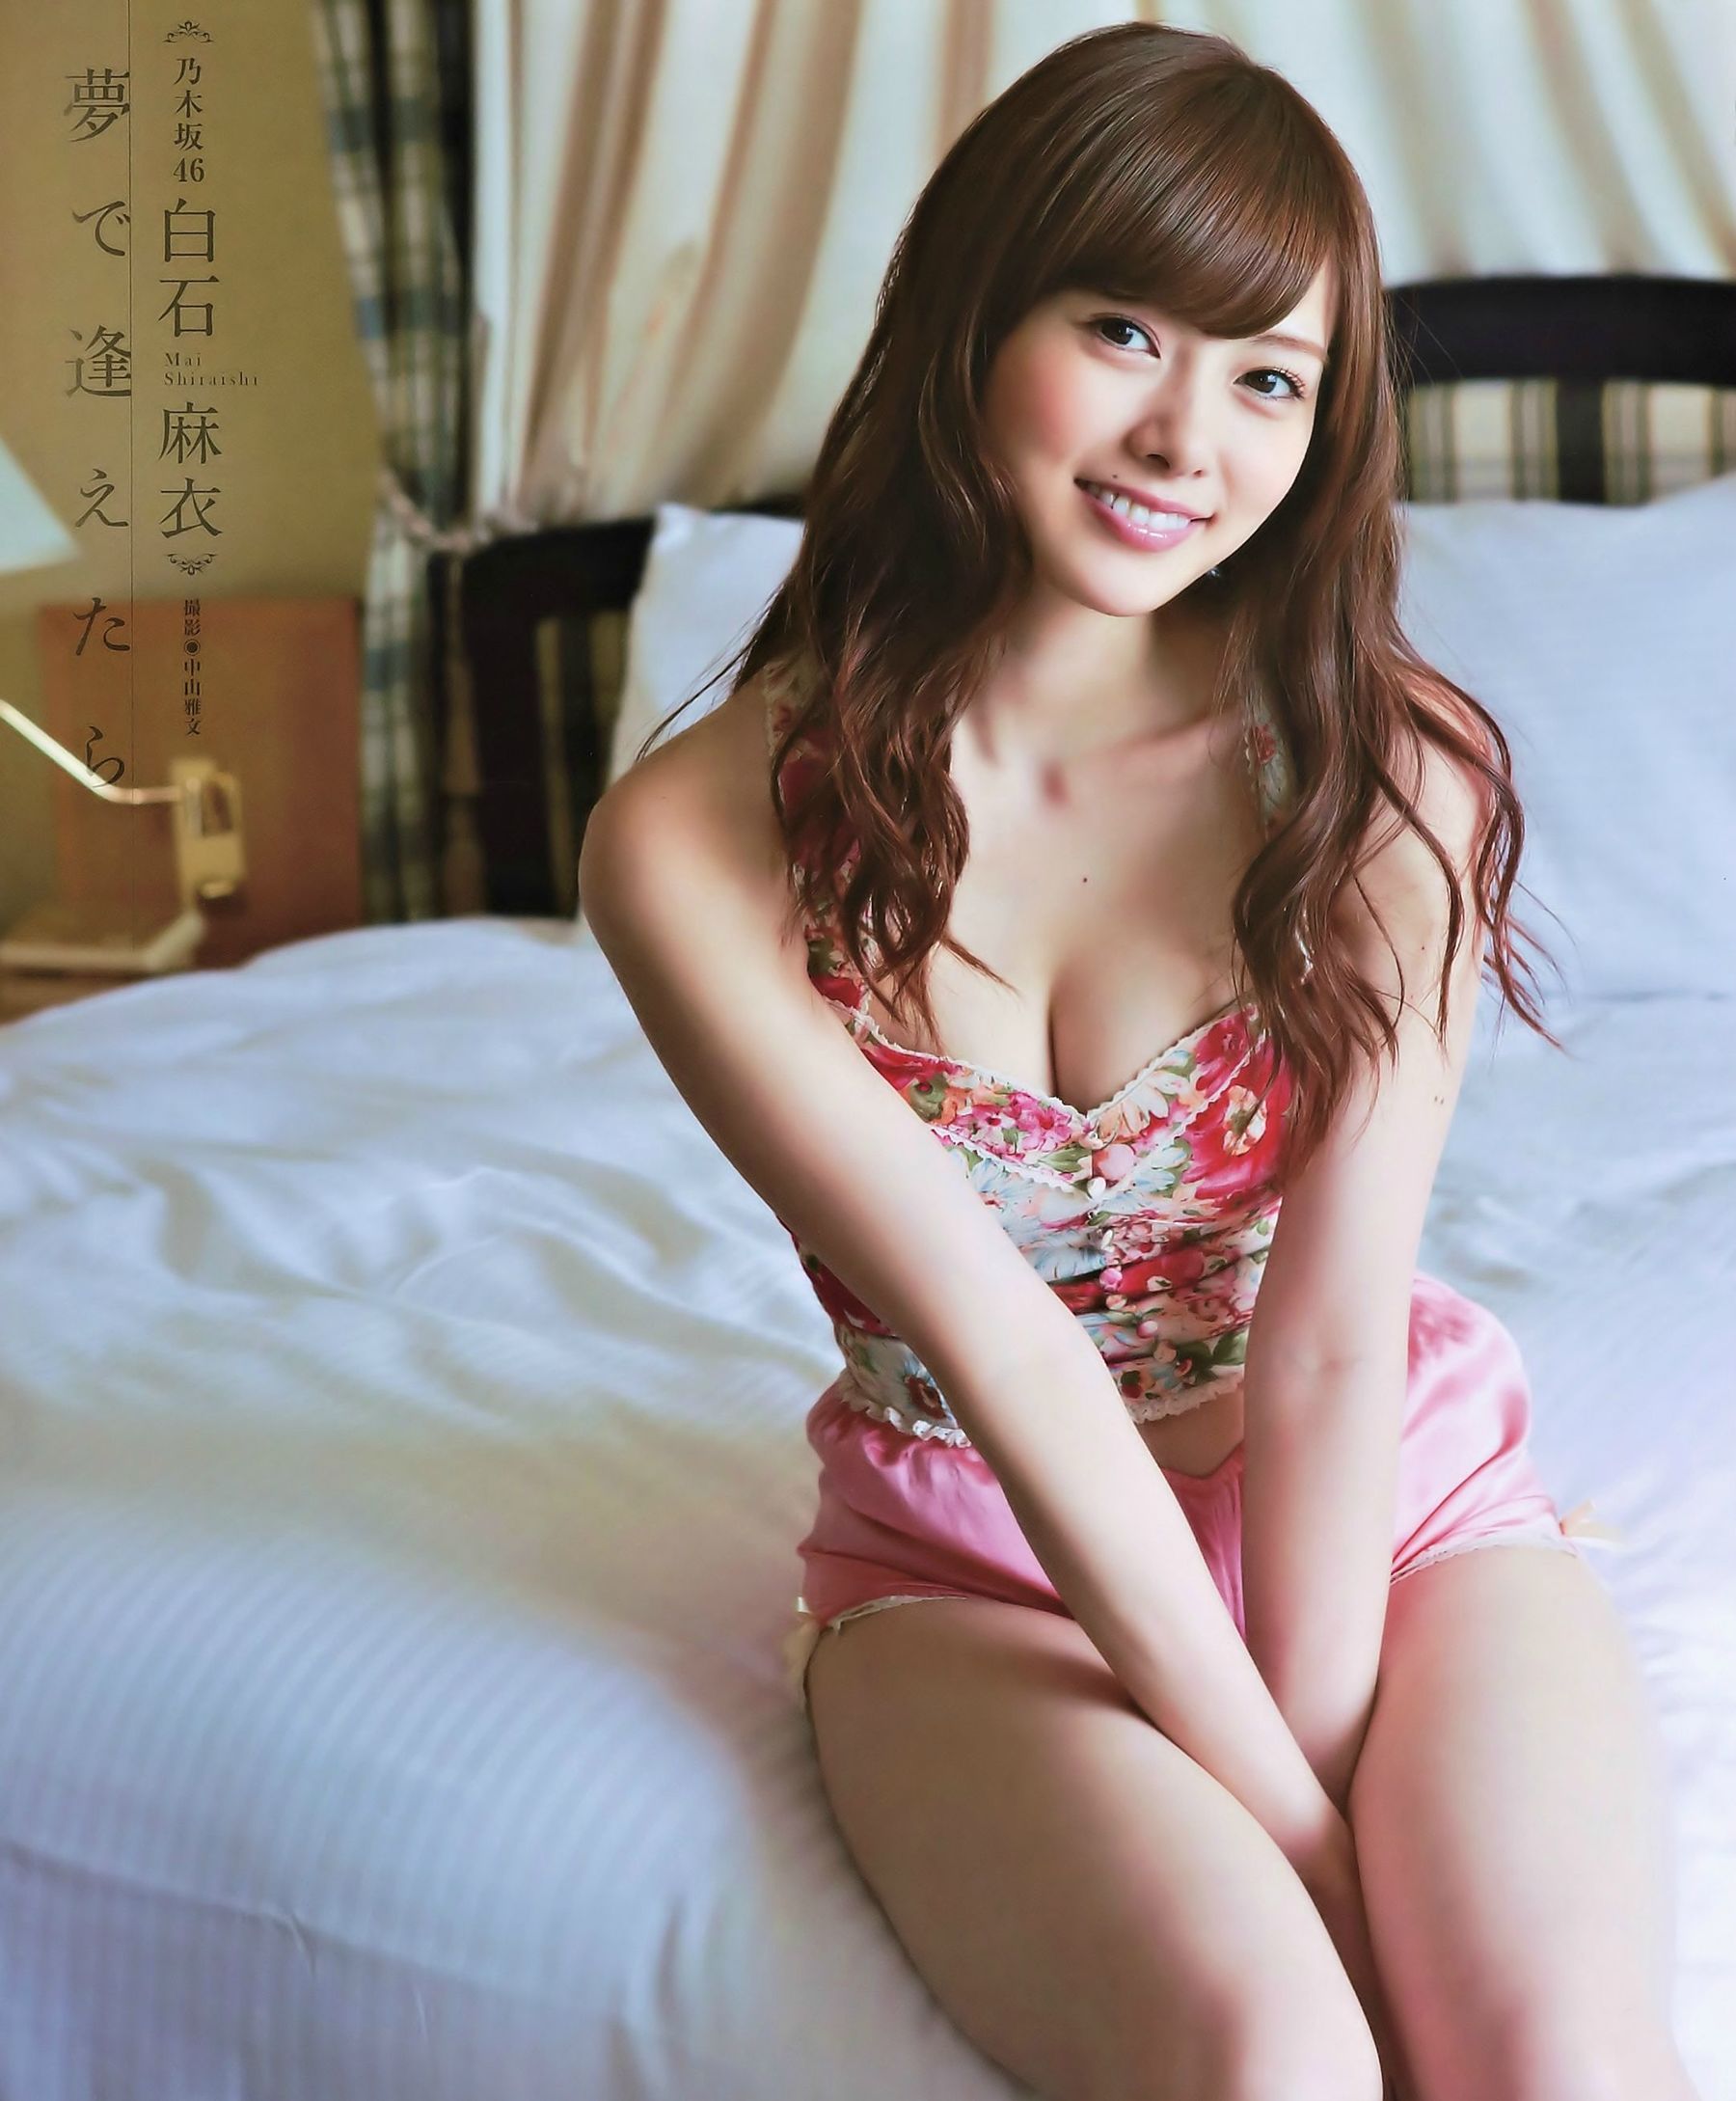 [网络美女]气质日本女星:白石麻衣高品质写真作品个人分享(16P)